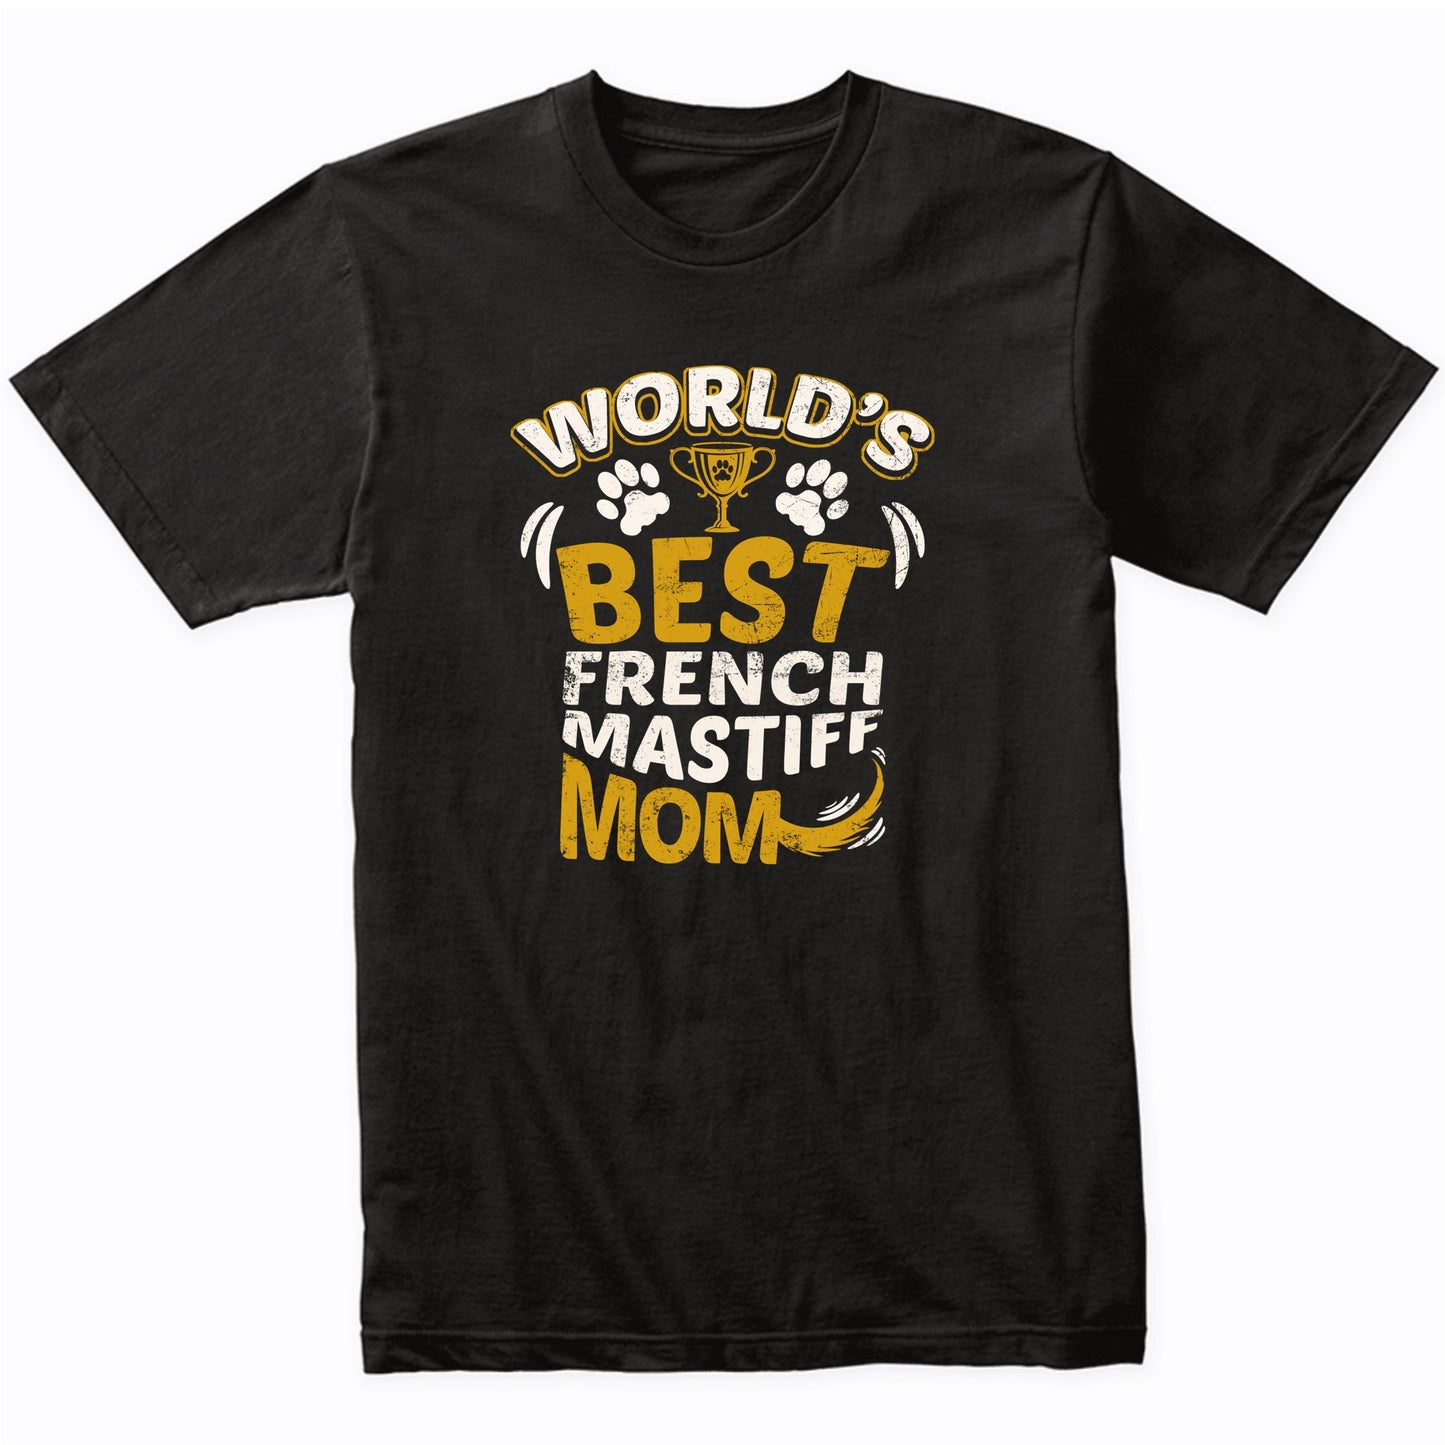 World's Best French Mastiff Mom Graphic T-Shirt